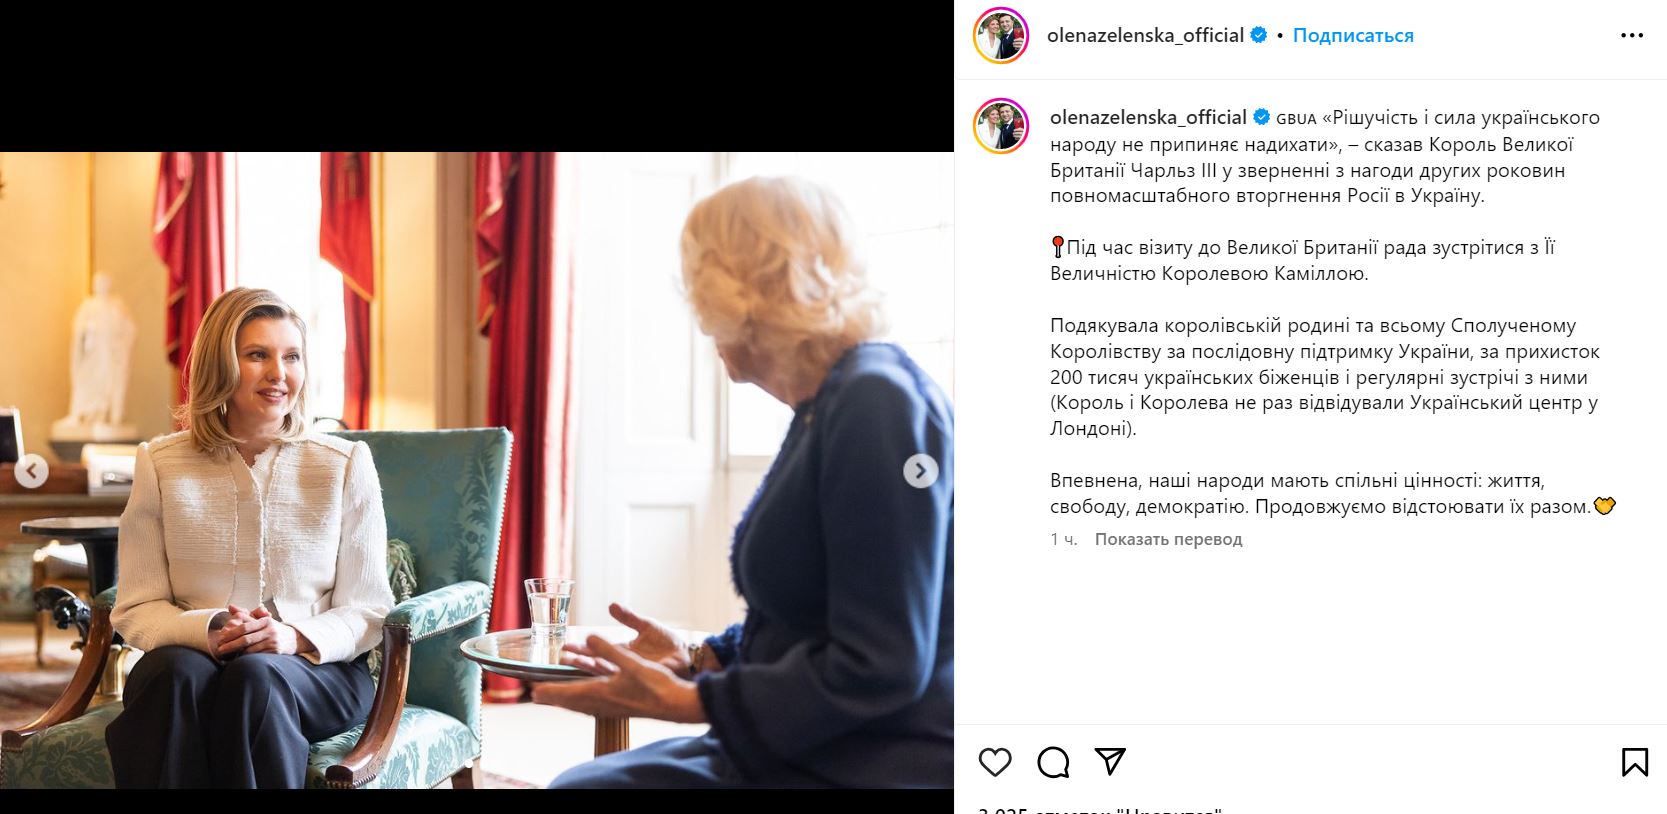 Елена Зеленская встретилась с королевой Камиллой: фото  — фото